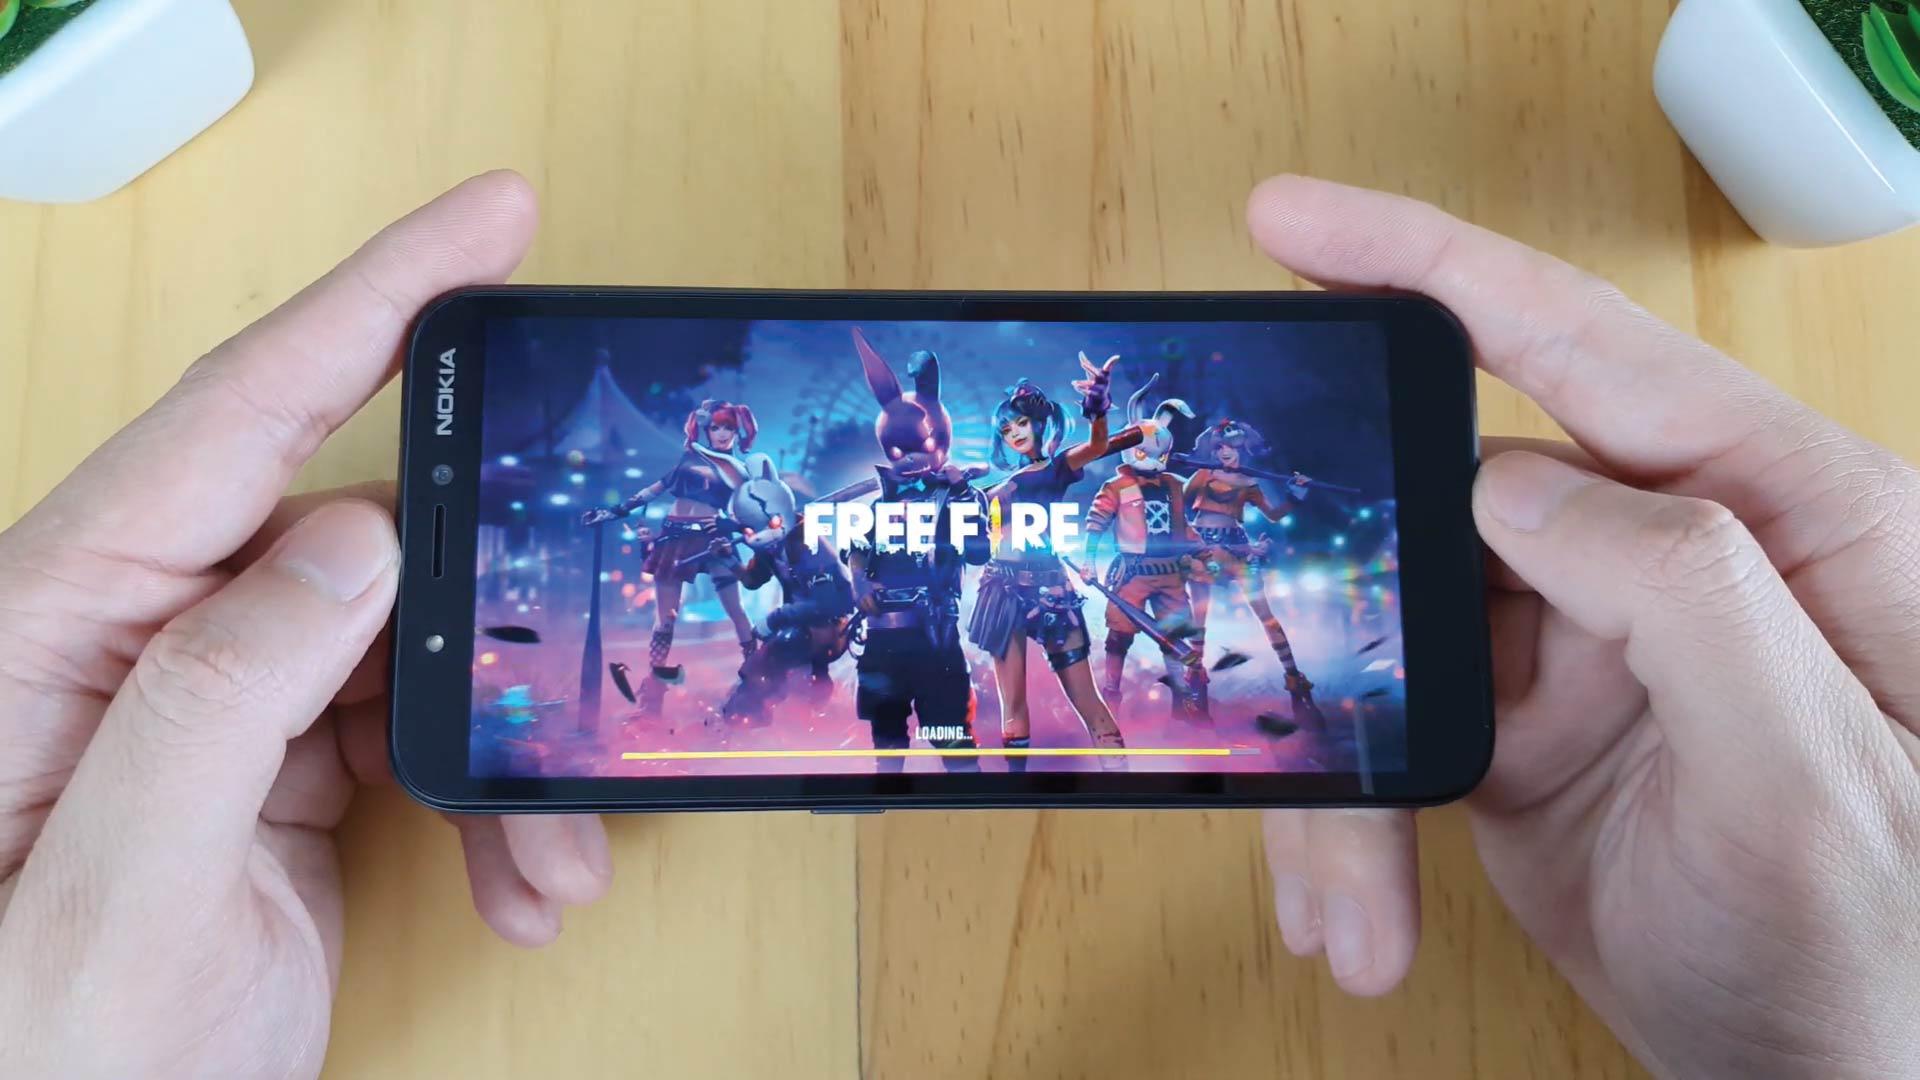 Melhores Celulares para Jogar Free Fire - Promobit